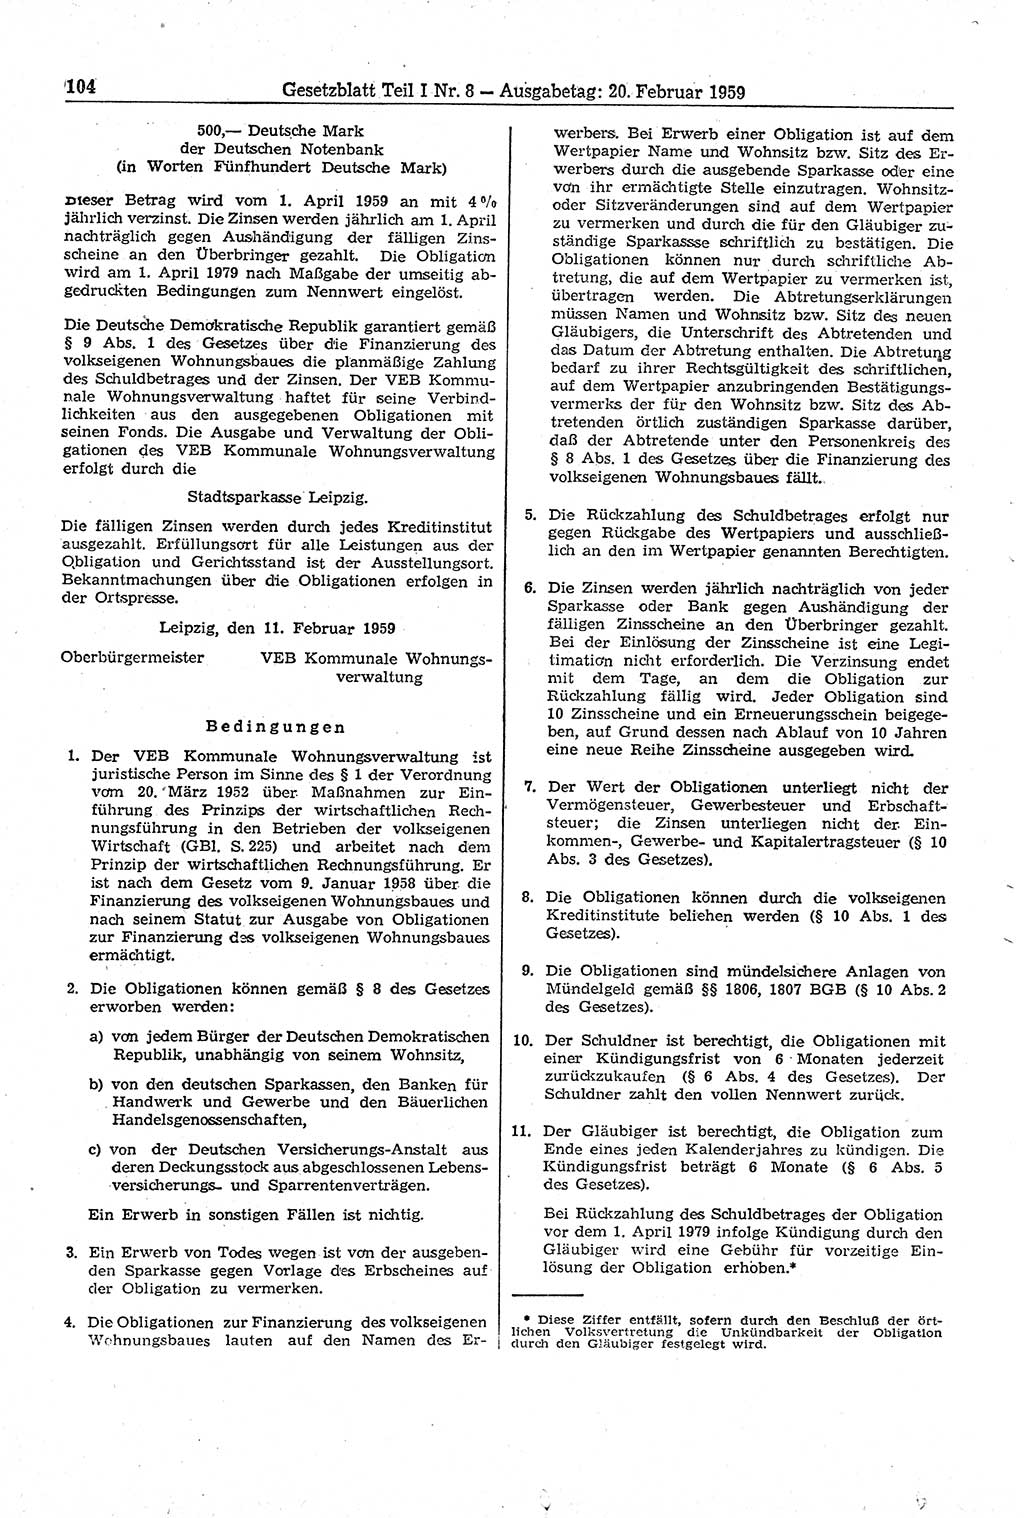 Gesetzblatt (GBl.) der Deutschen Demokratischen Republik (DDR) Teil Ⅰ 1959, Seite 104 (GBl. DDR Ⅰ 1959, S. 104)